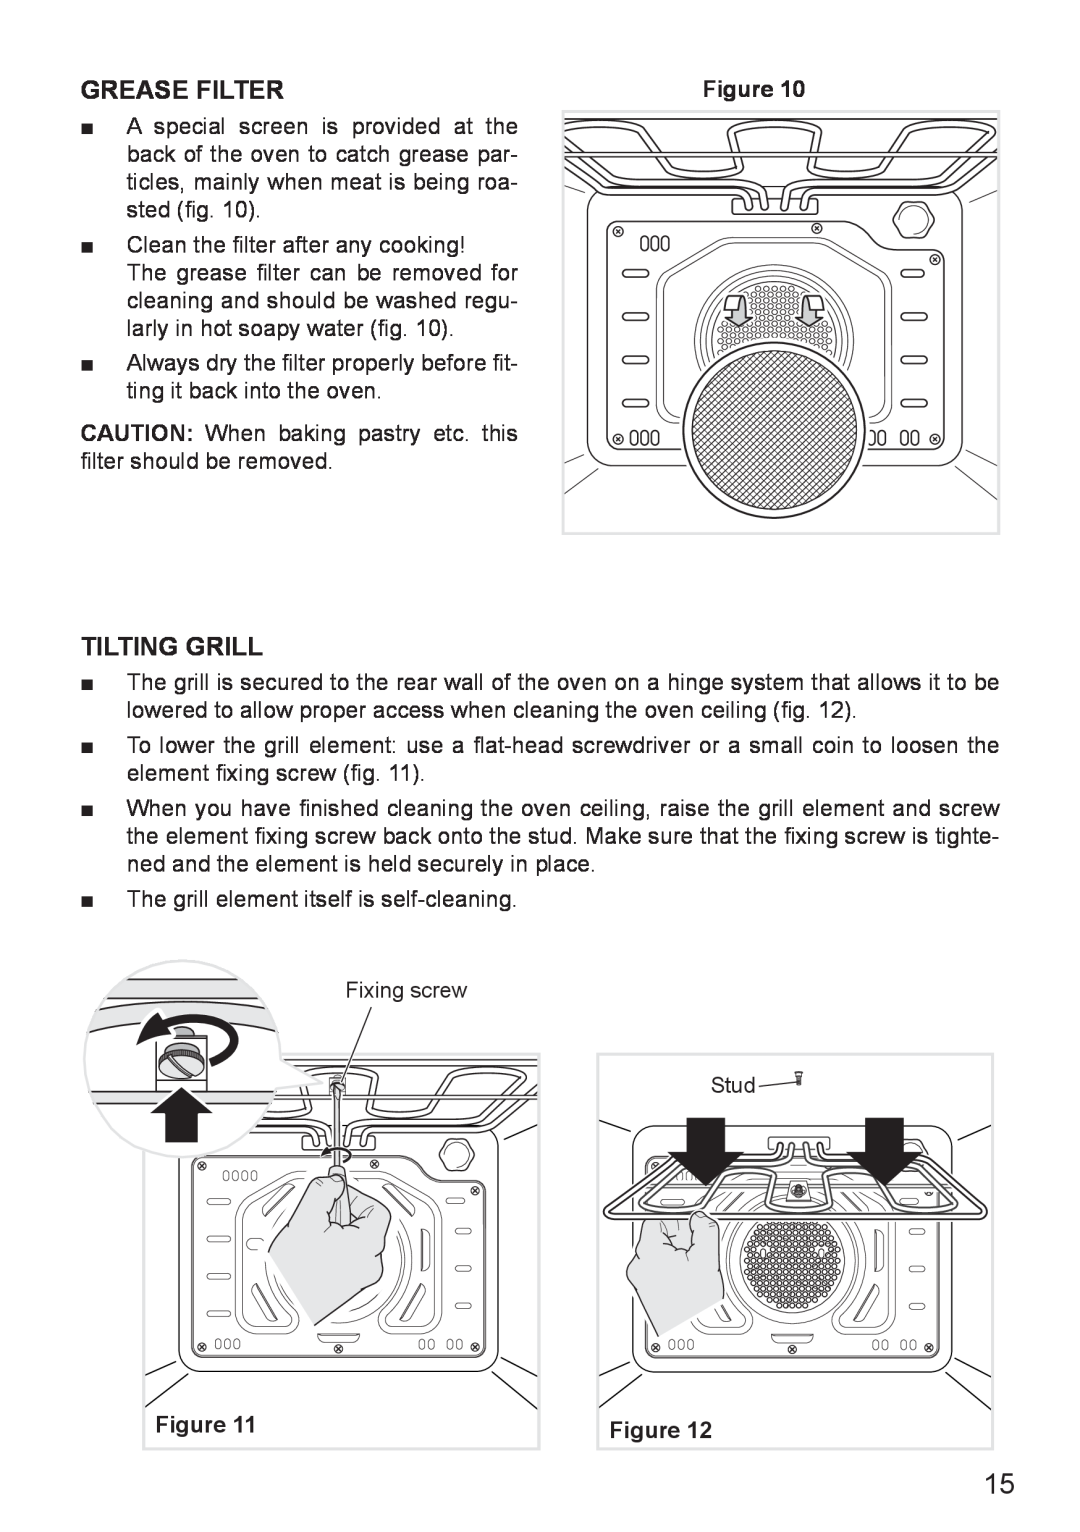 DeLonghi DE608MLH, DE608MRH manual Grease Filter, Tilting Grill 